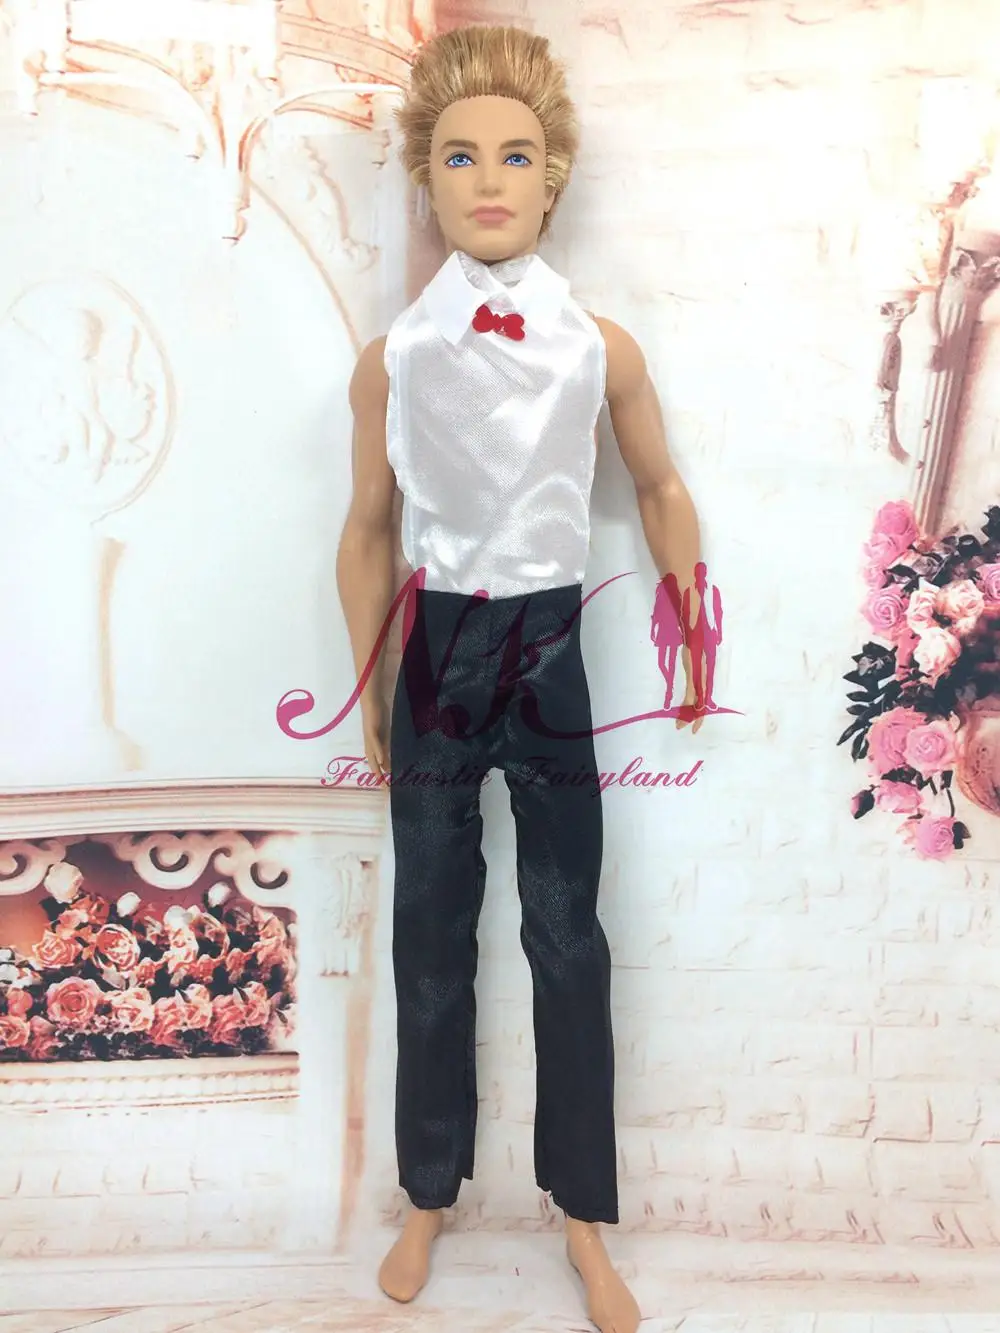 Кукла NK Prince, одежда ручной работы, костюм невесты с белой рубашкой и штанами для мальчика Барби, Одежда для куклы Kend, аксессуары